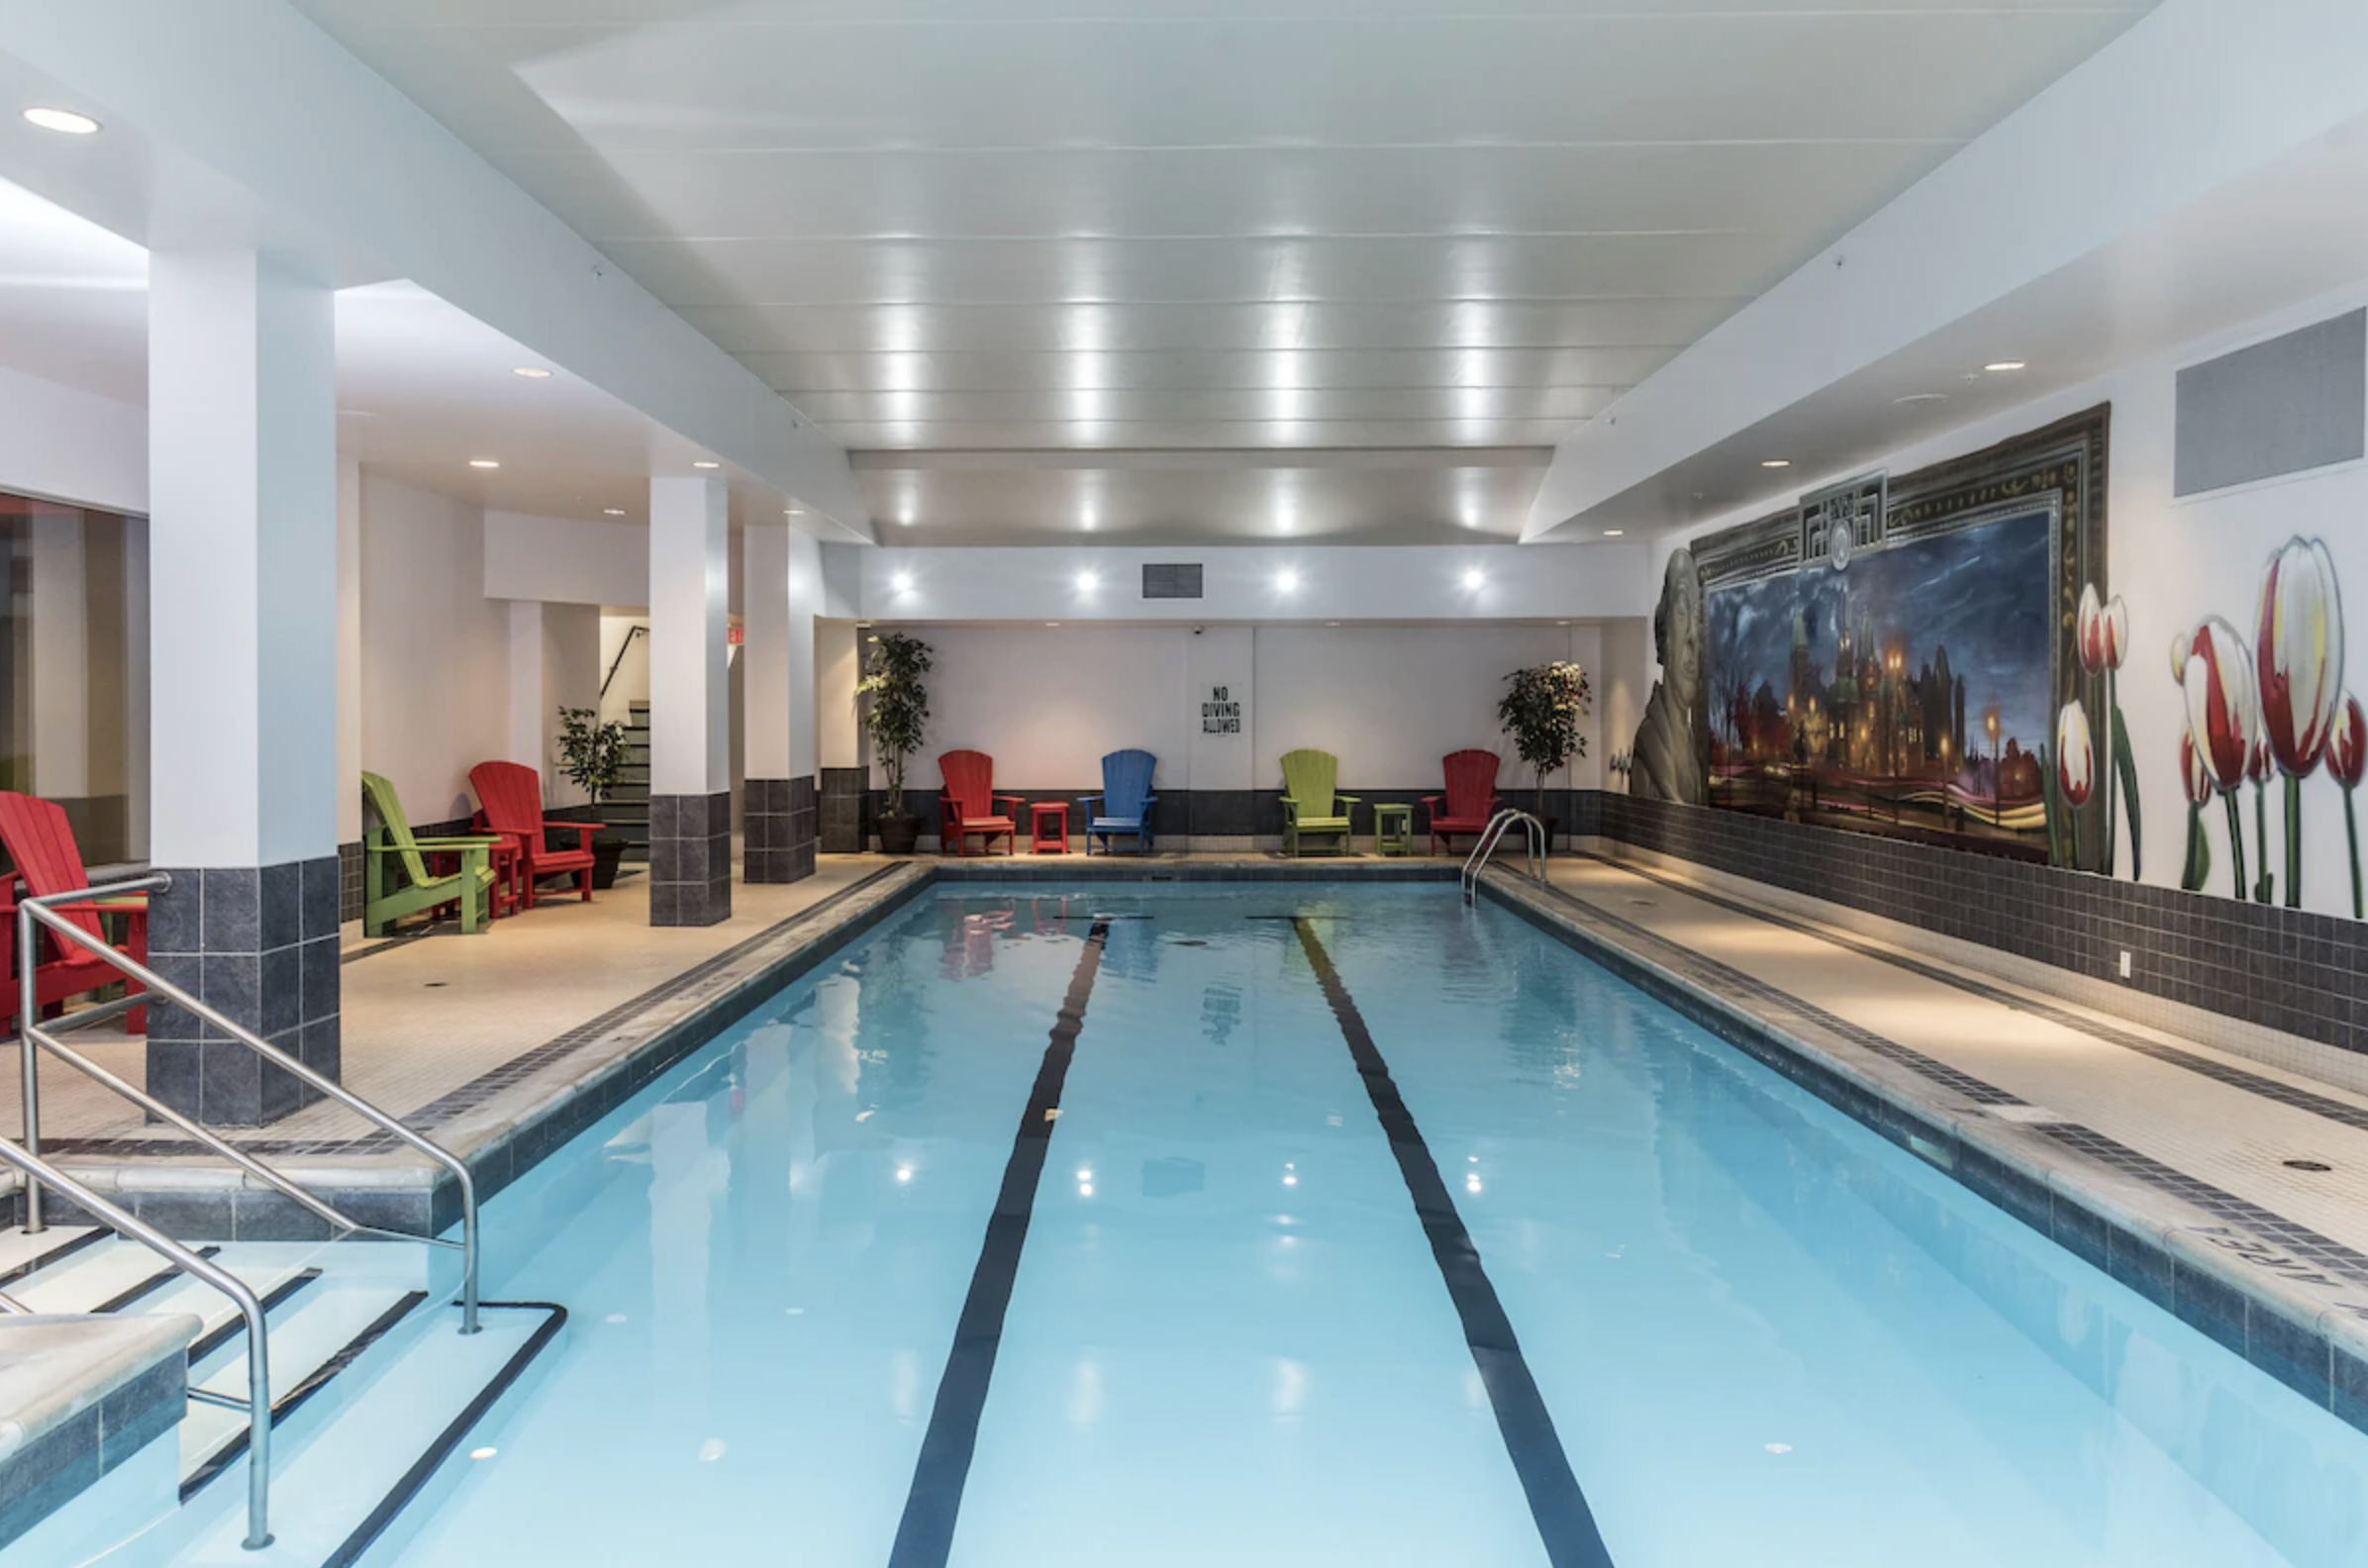 5. Lord Elgin Hotel - Indoor pool